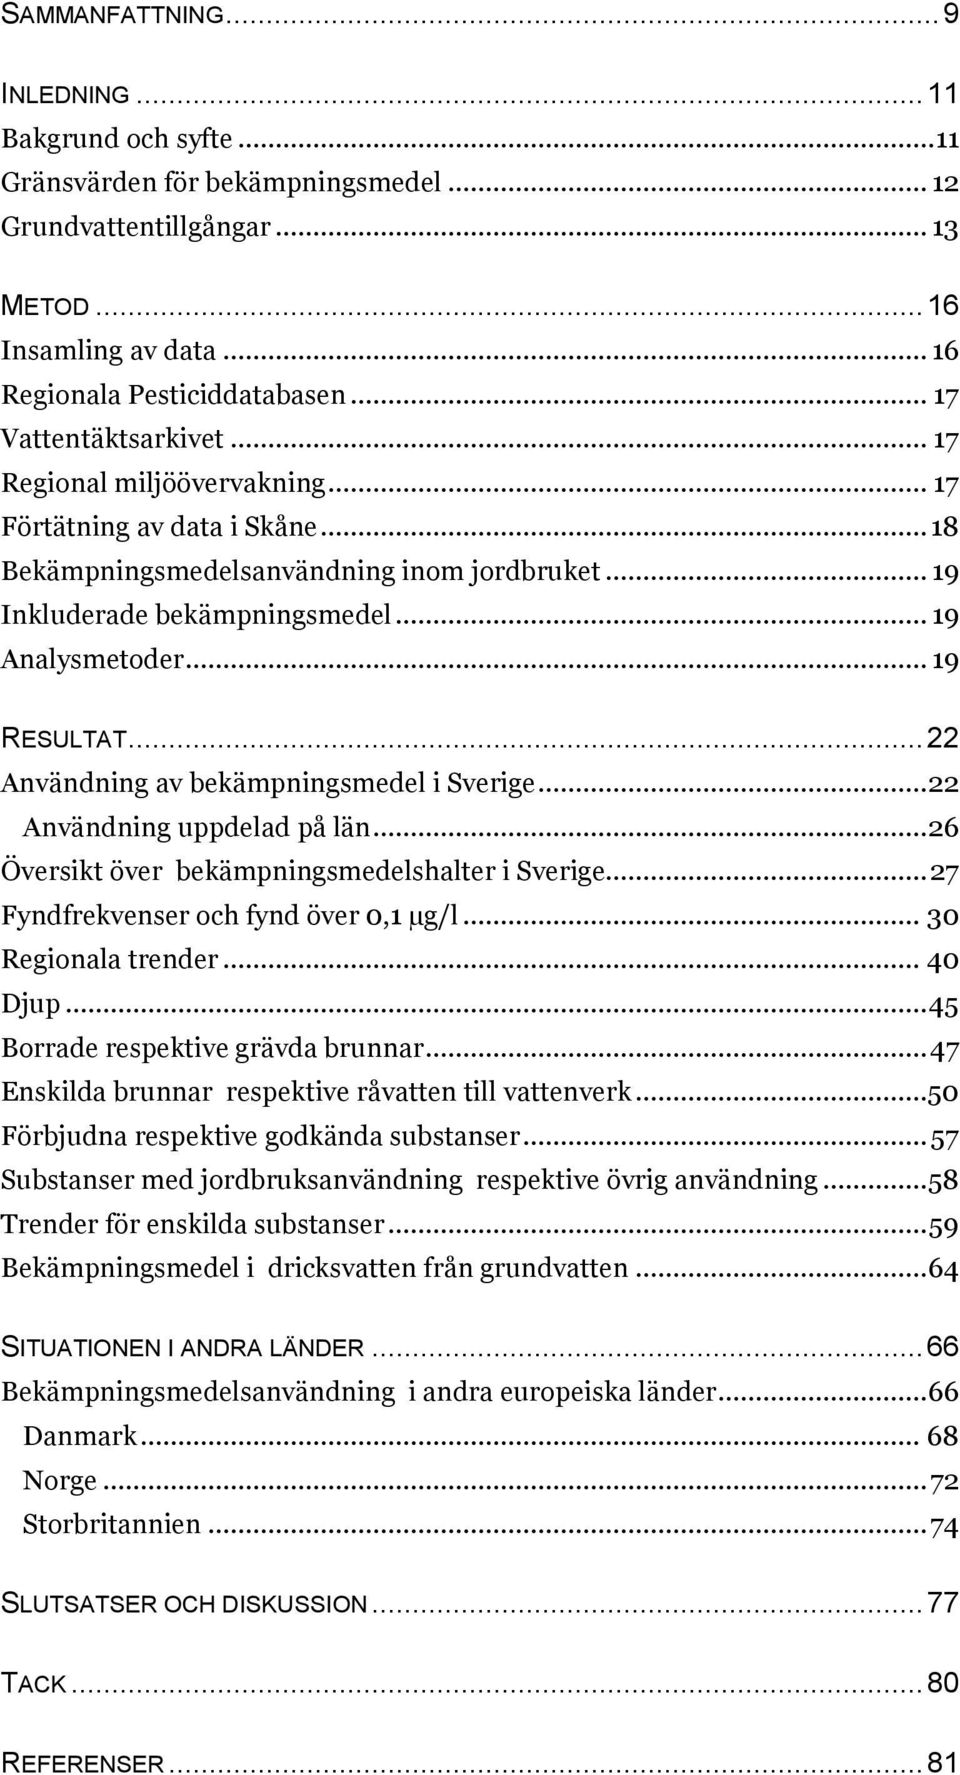 .. 19 RESULTAT... 22 Användning av bekämpningsmedel i Sverige... 22 Användning uppdelad på län... 26 Översikt över bekämpningsmedelshalter i Sverige... 27 Fyndfrekvenser och fynd över 0,1 µg/l.